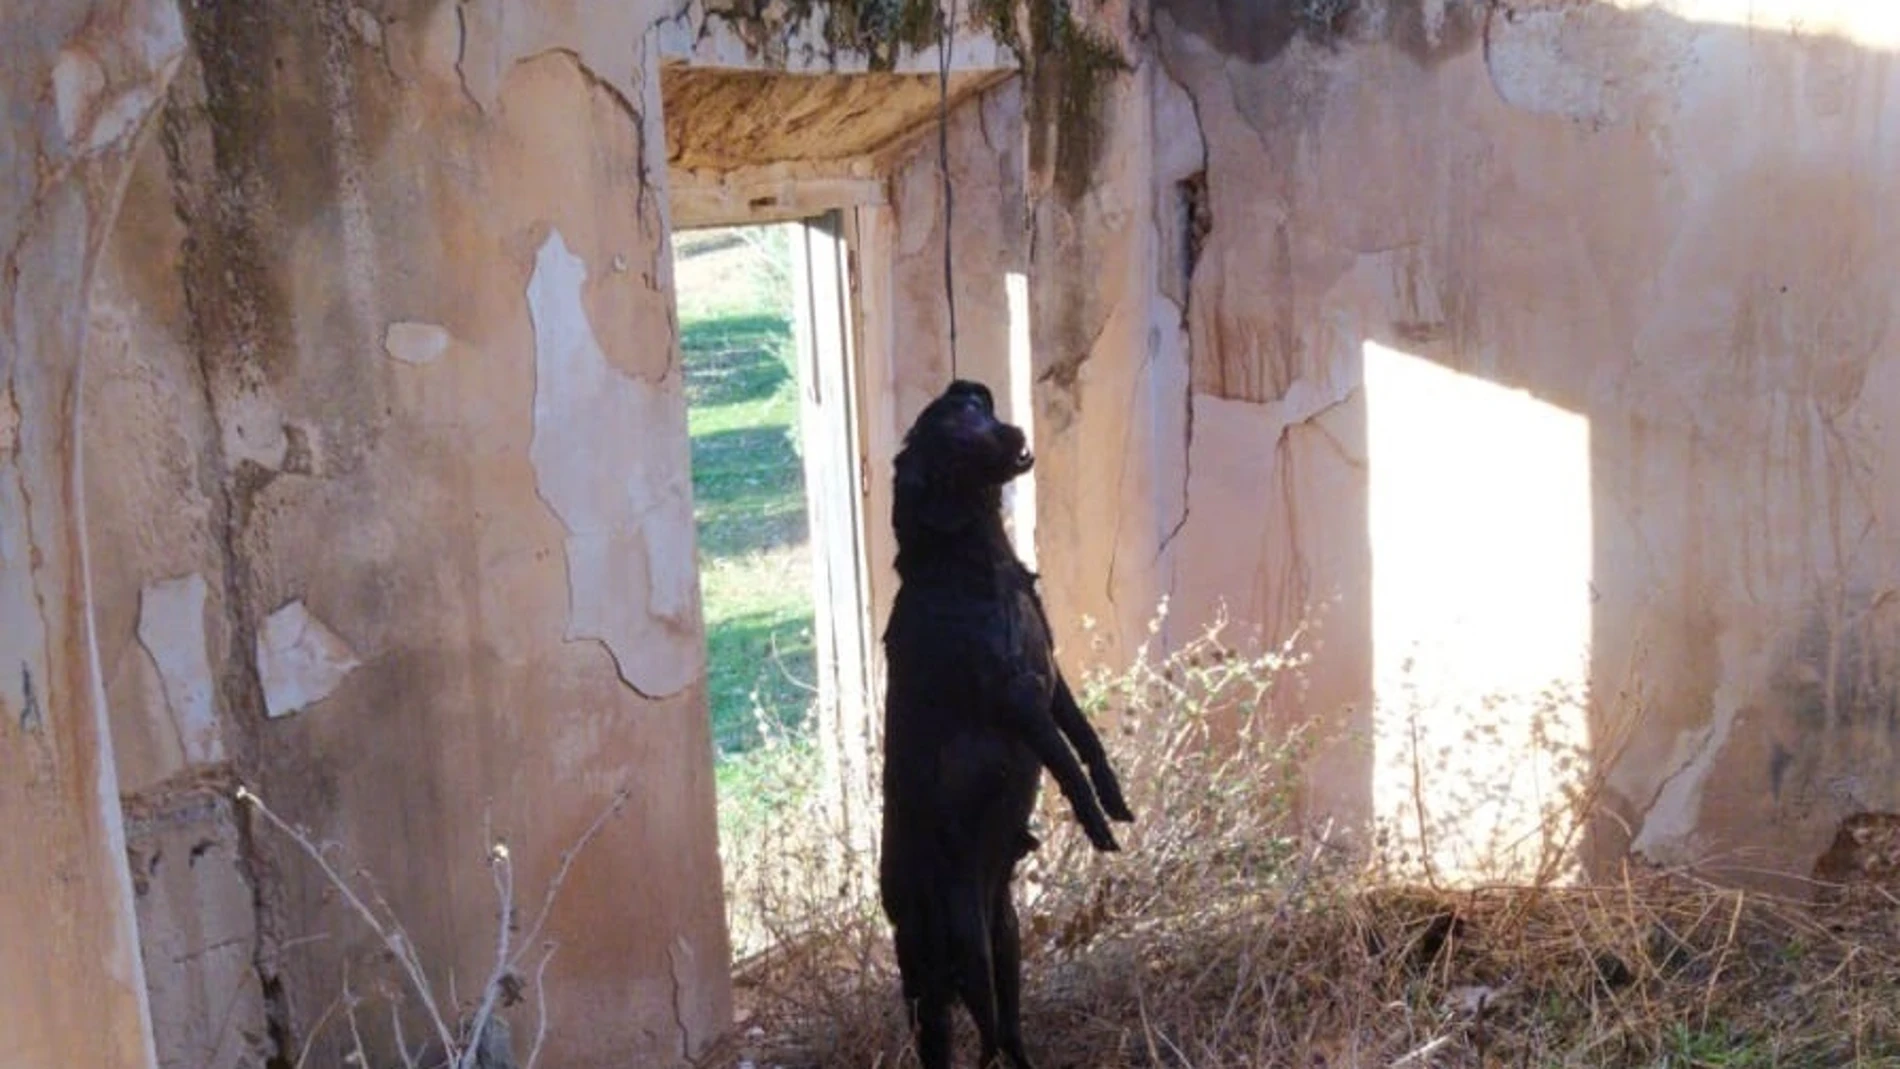 Nueve meses de cárcel por ahorcar a su perro en un cortijo en Jaén